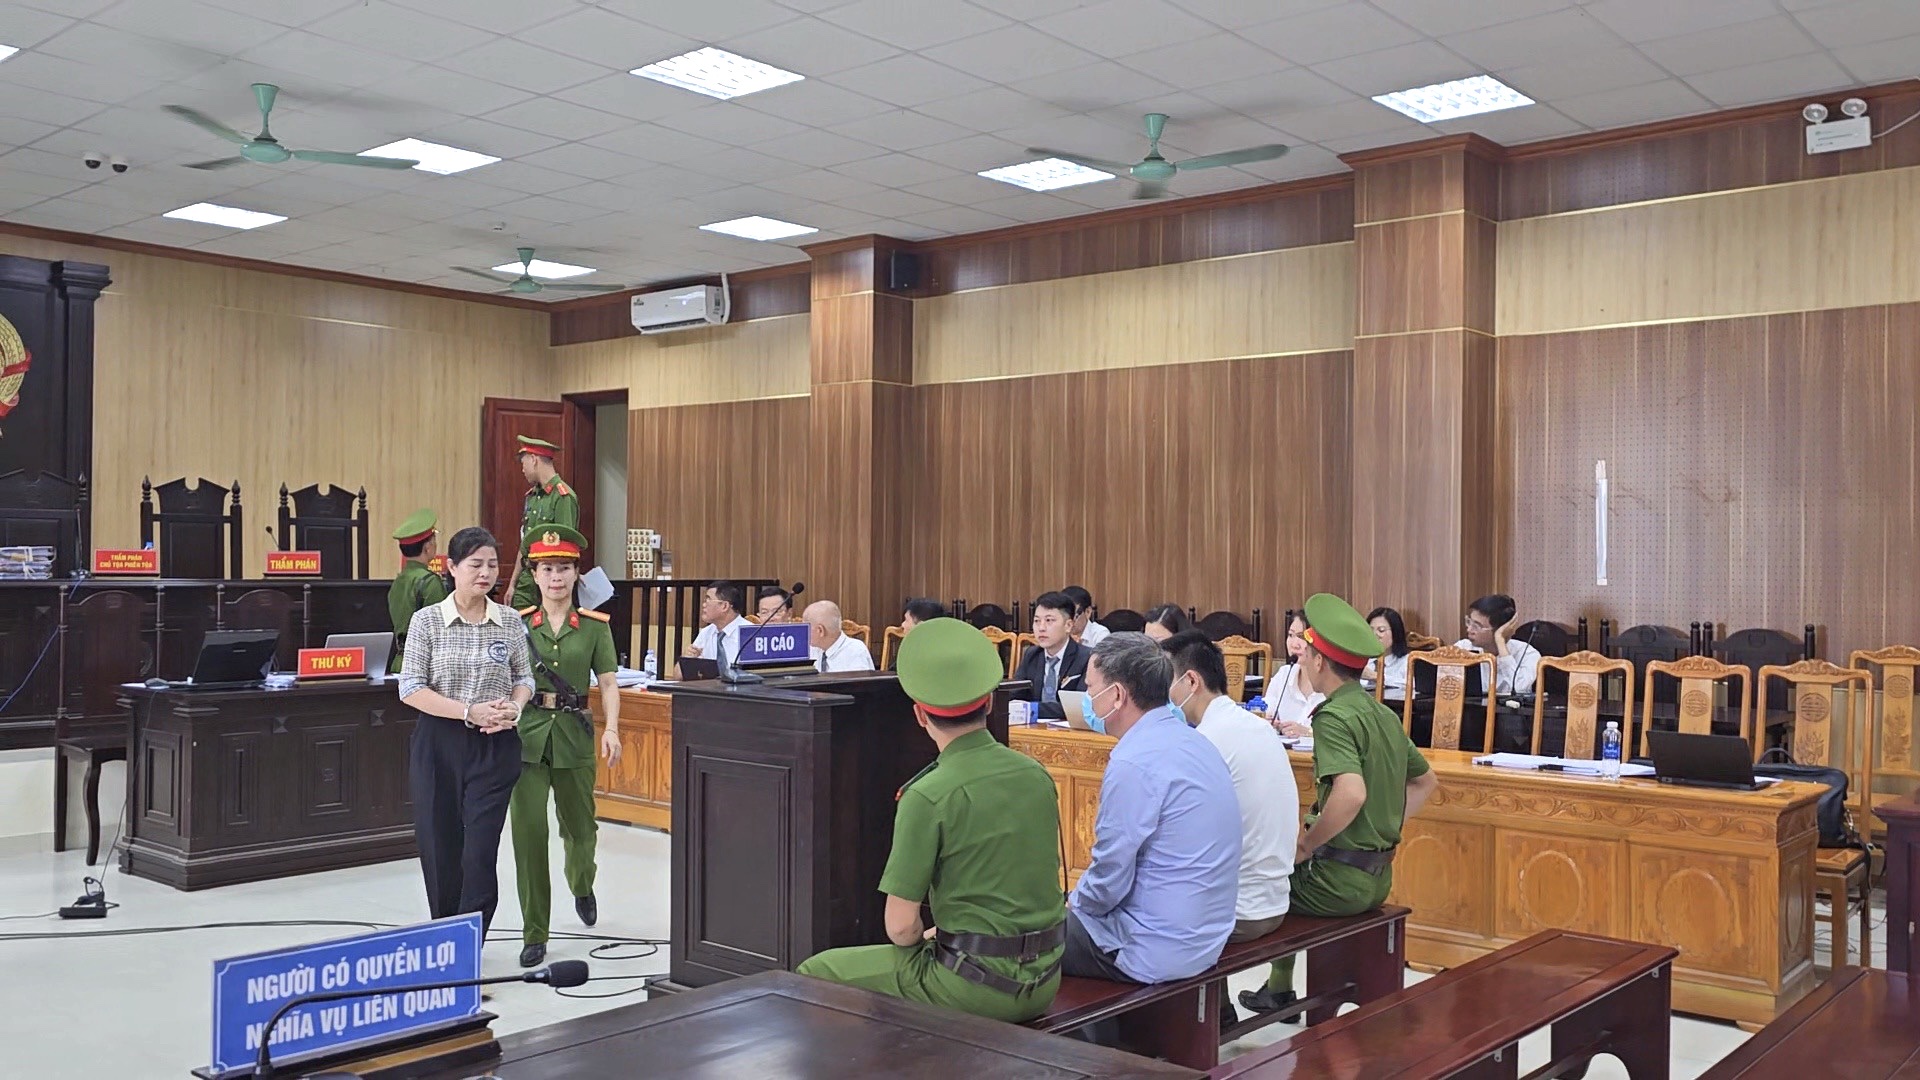 Nguyên giám đốc Sở GDĐT Thanh Hoá bị đề nghị xử phạt mức án từ 4 - 5 năm tù - Ảnh 1.